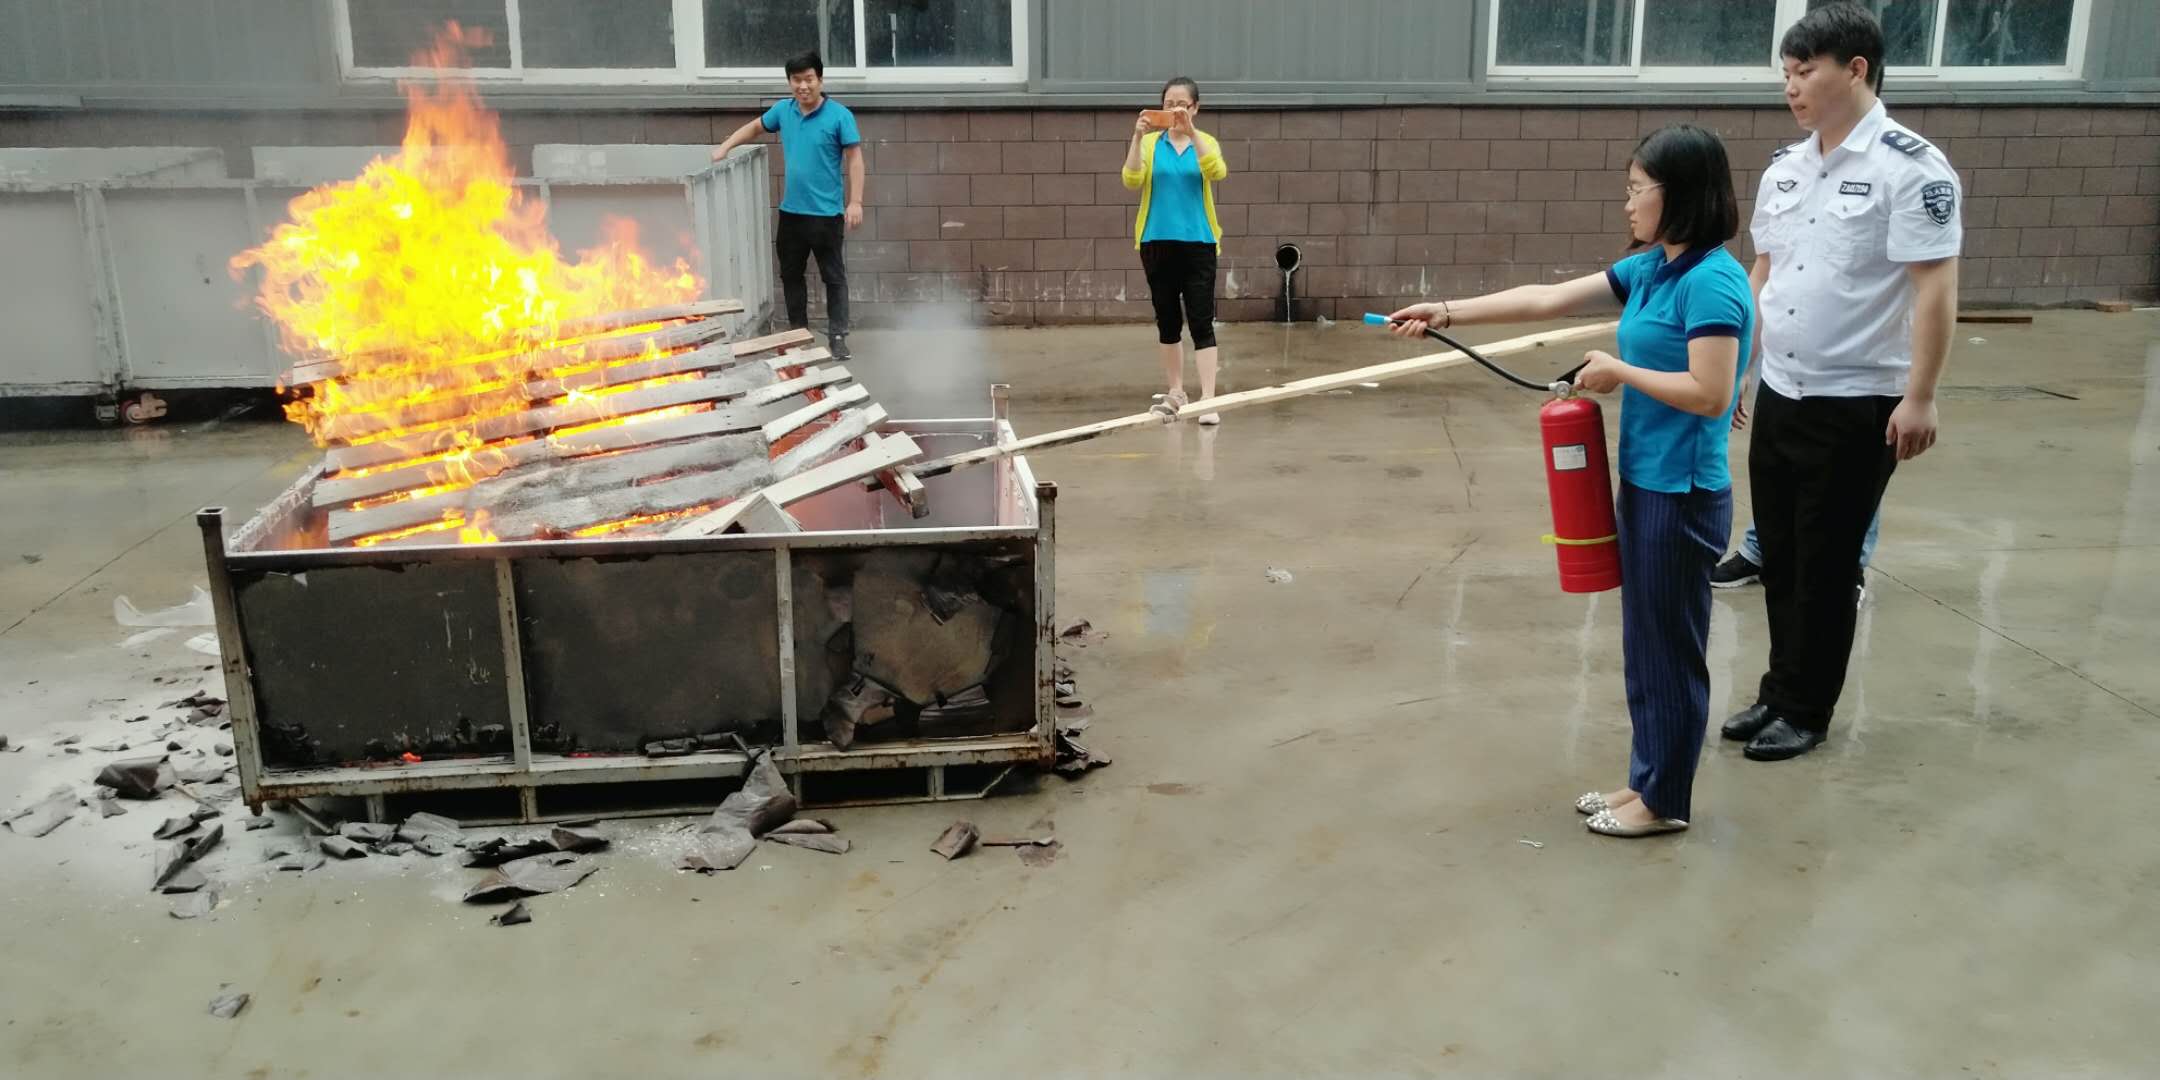 这场消防培训演练活动“热情似火”